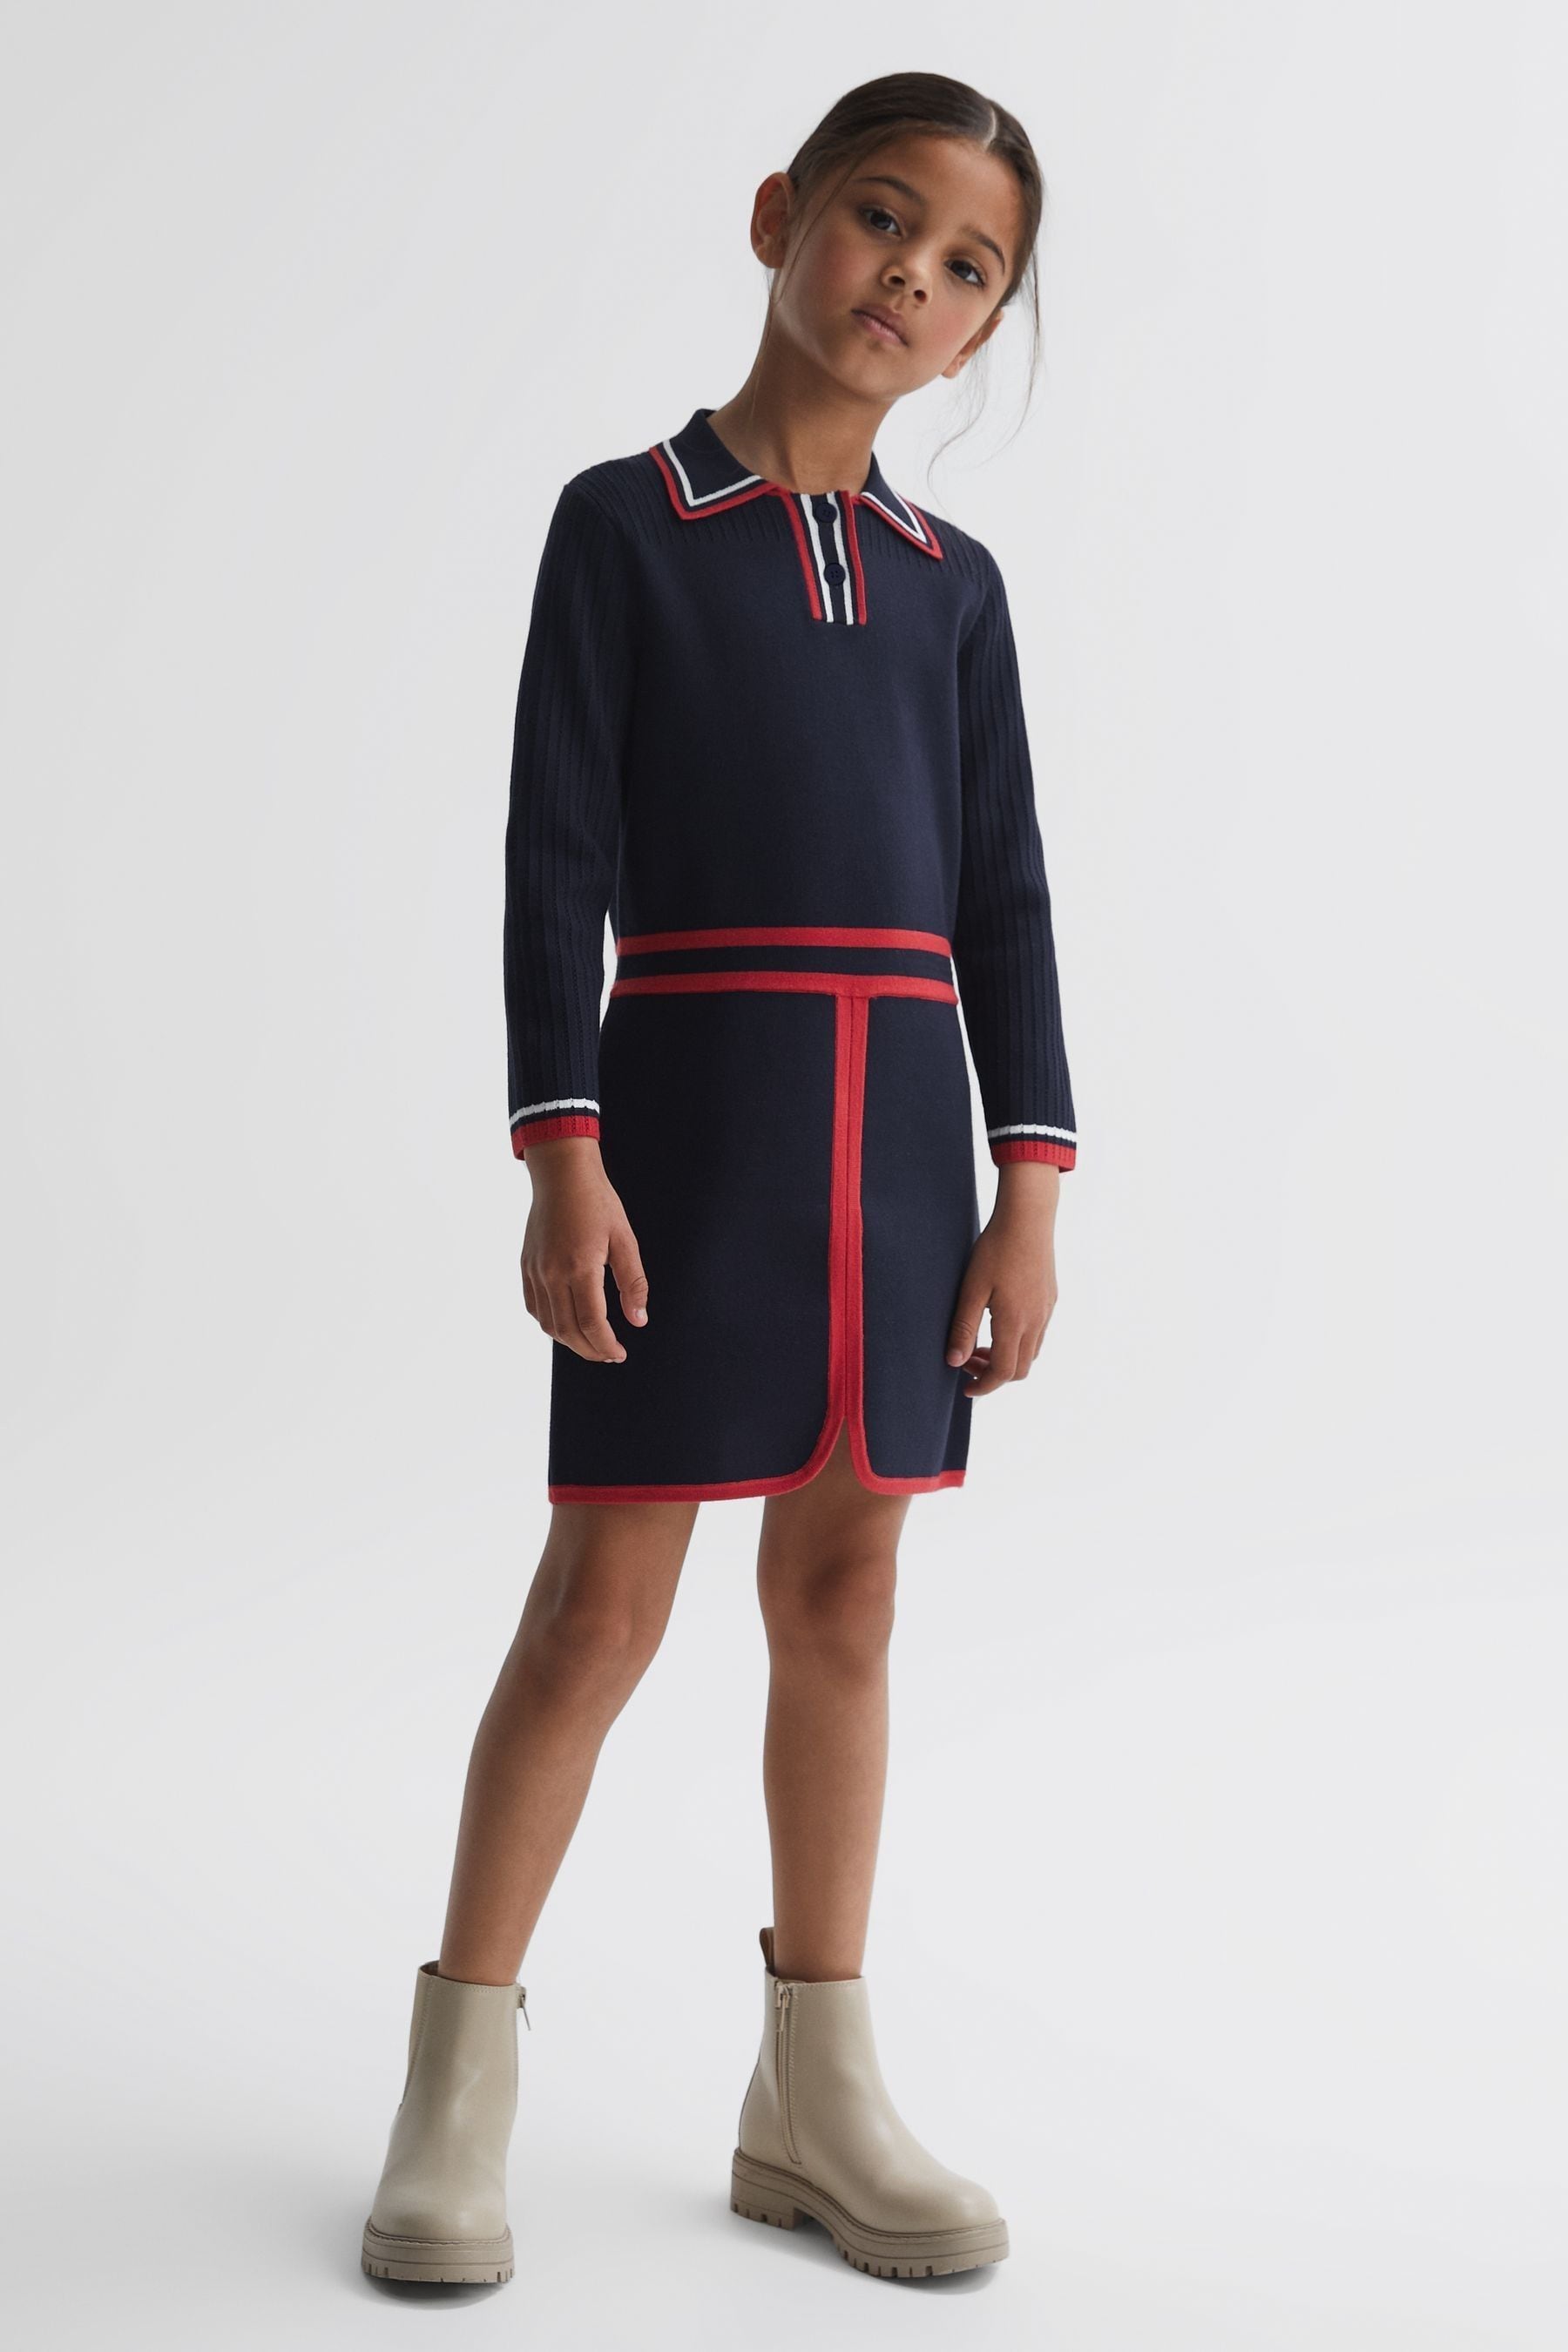 Reiss Kids' Ruby - Navy Senior Knitted Polo Dress, Uk 11-12 Yrs